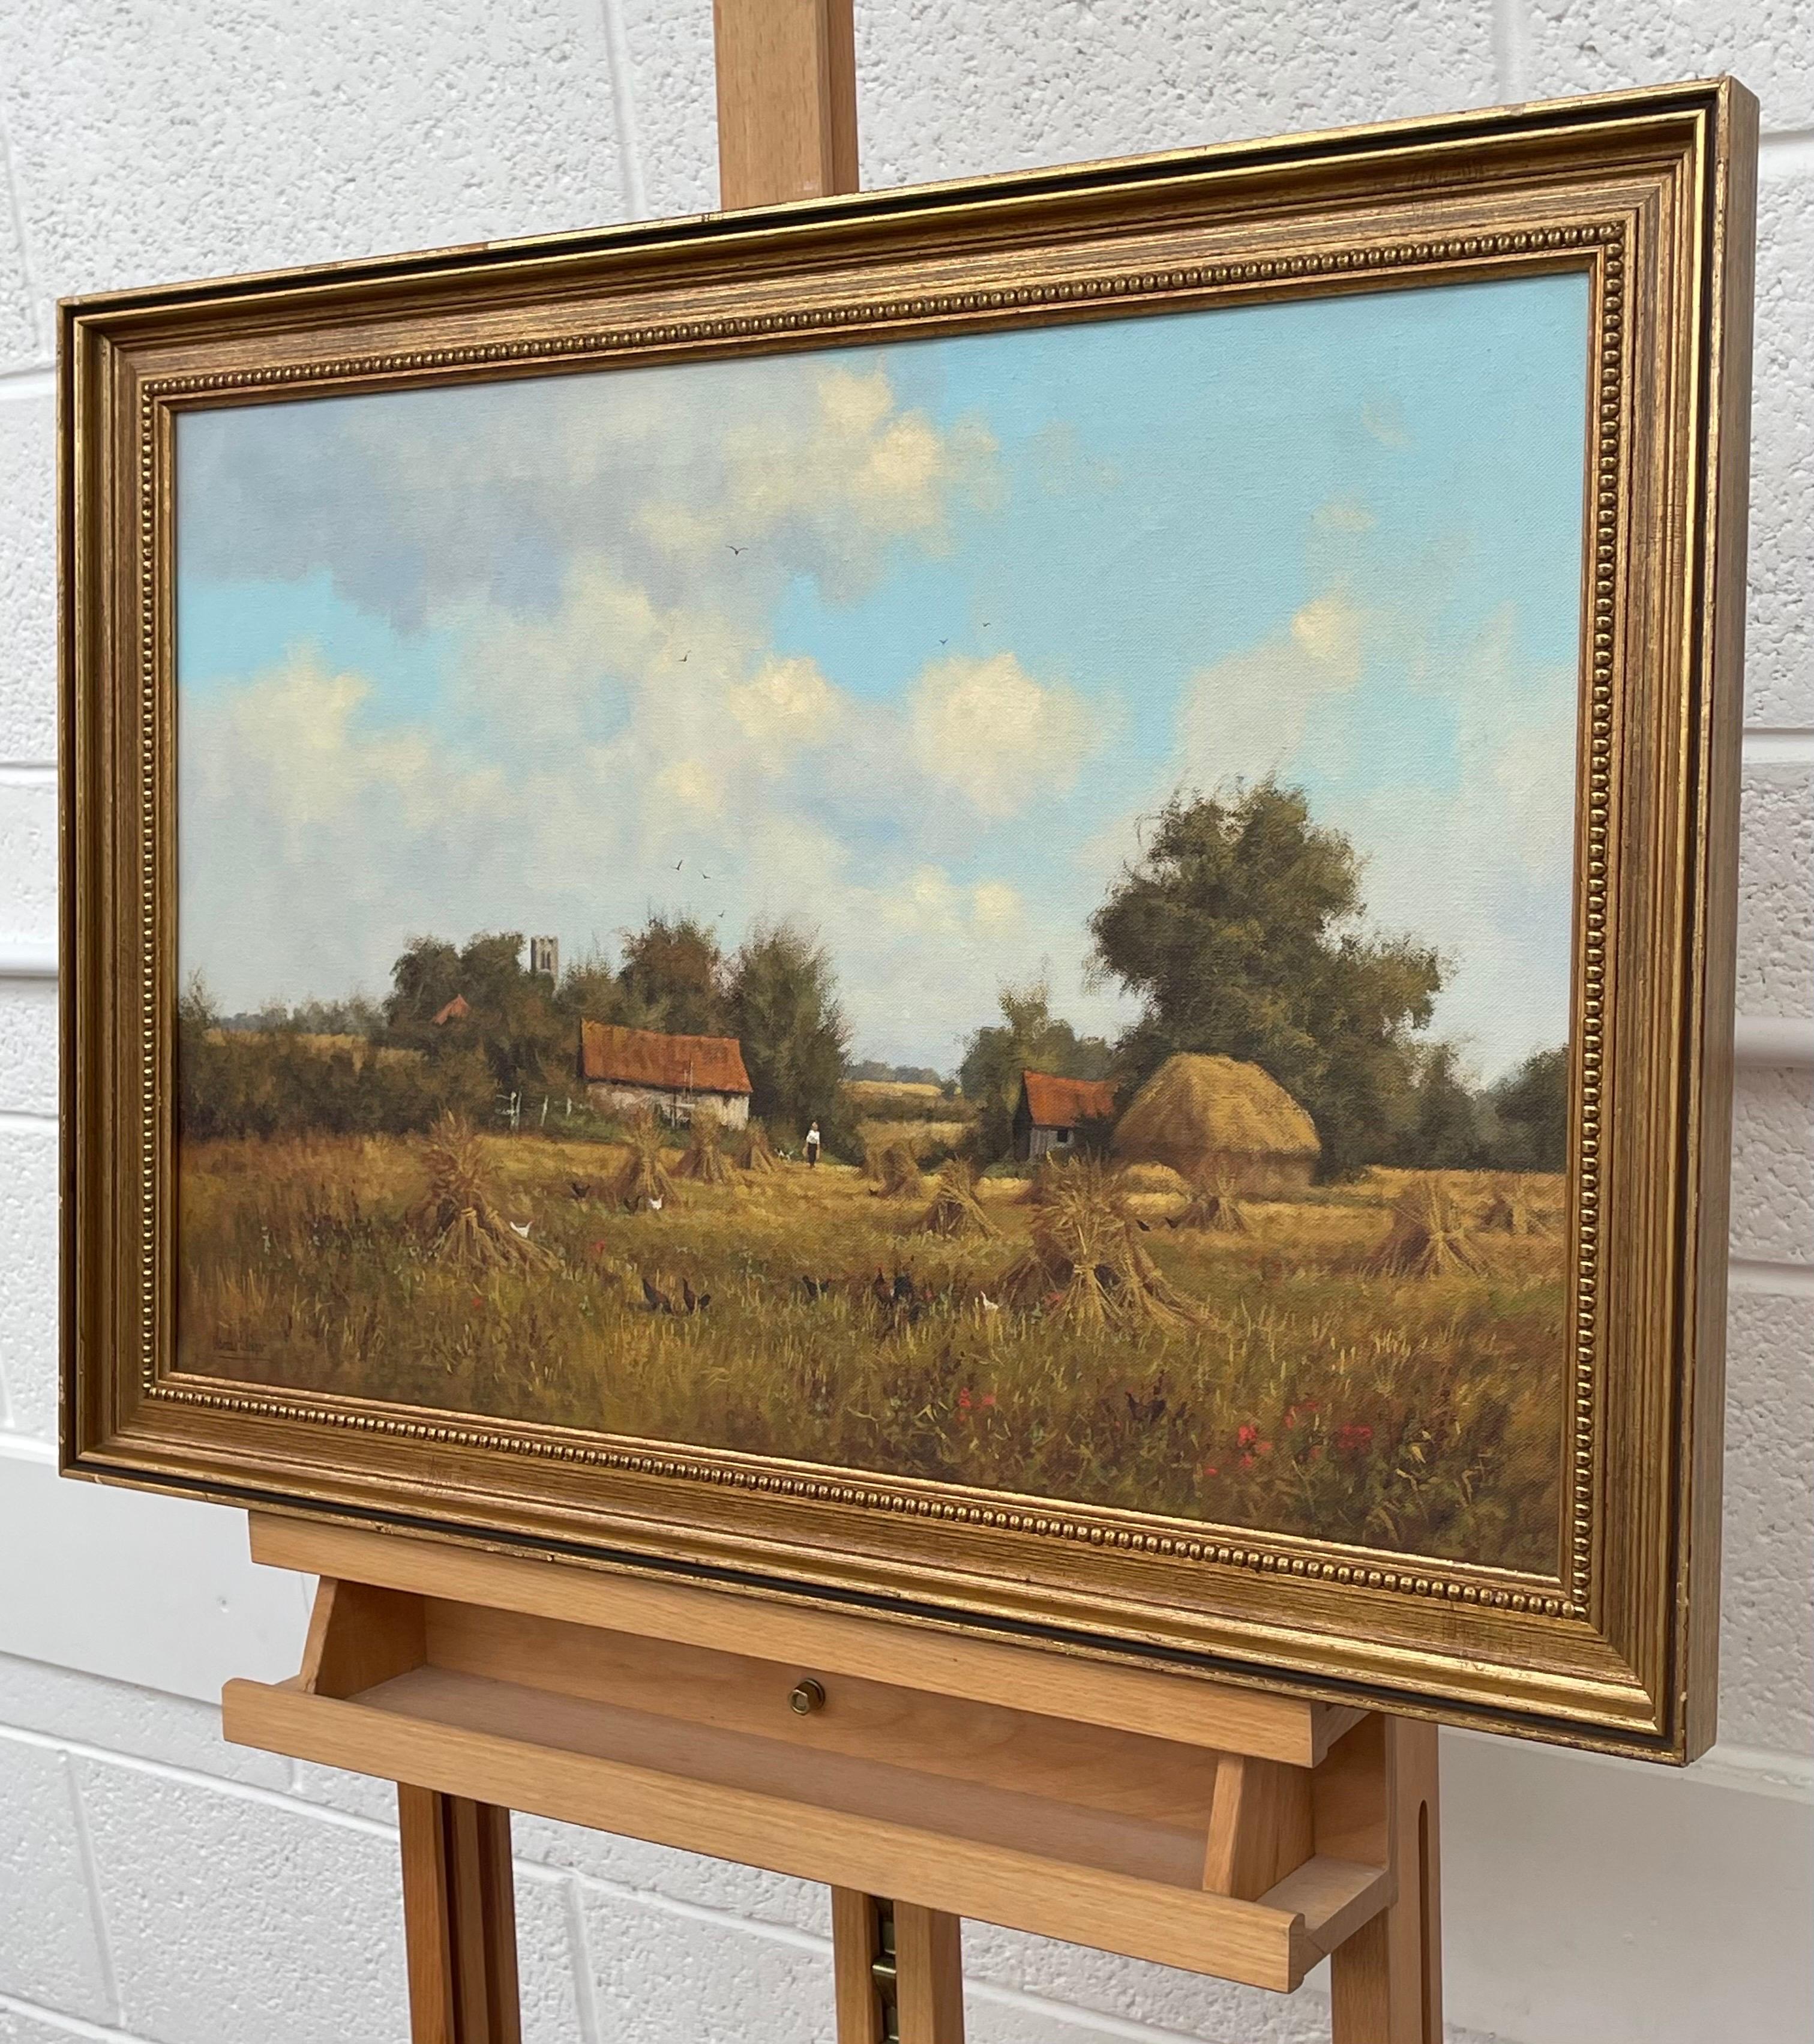 Bauernhofszene mit Heuschobern in der englischen Landschaft des britischen Landschaftsmalers James Wright. 
Signiert, Original, Öl auf Leinwand, in einem vergoldeten Rahmen

Kunst misst 24 x 15,5 Zoll
Rahmen misst 29 x 20 Zoll (ca.) 

James Wright